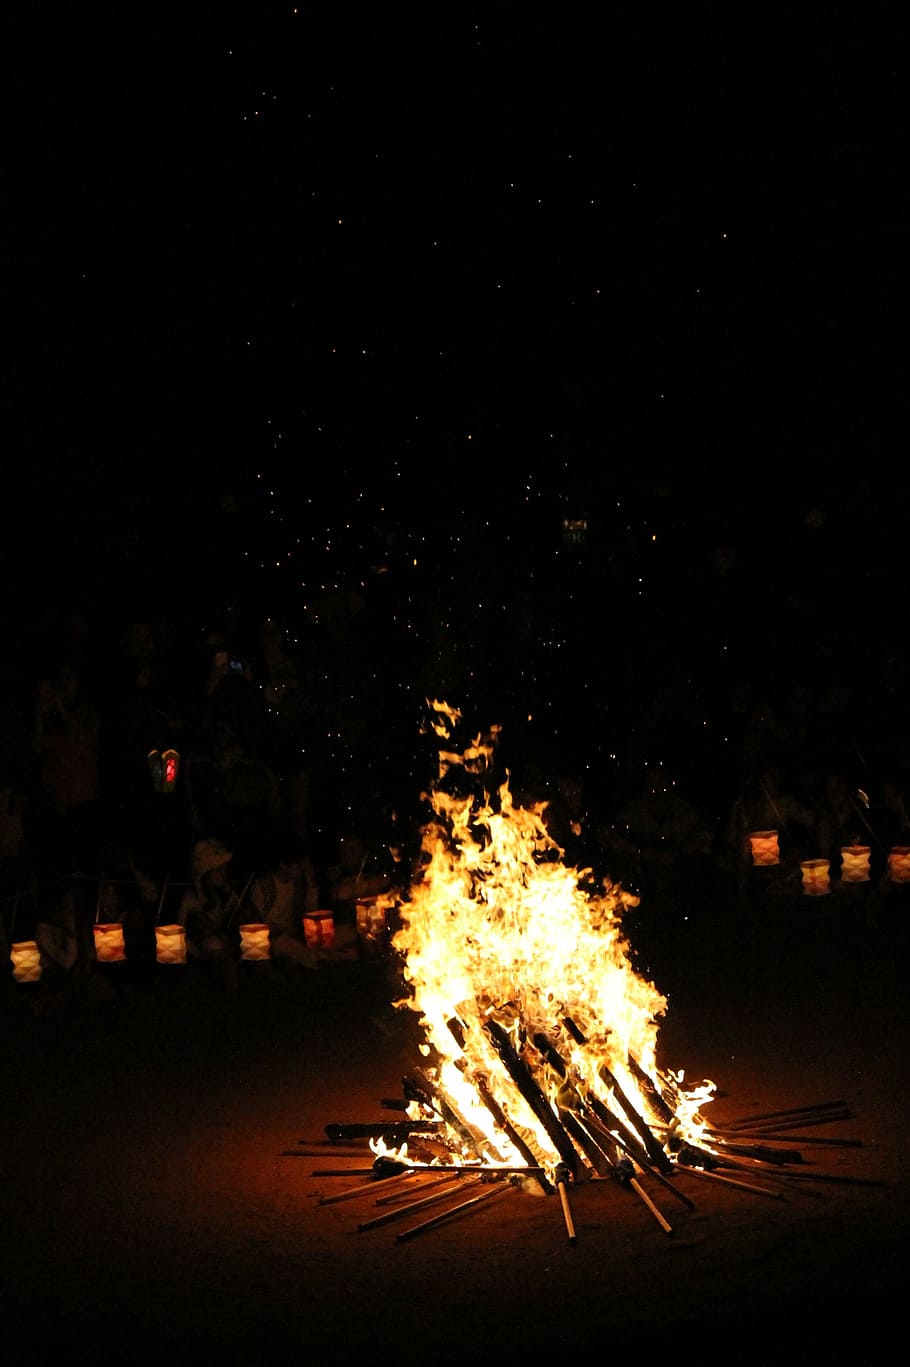 hoguera cerca de la linterna, san juan, festa junina, celebración, la estaca, noche, ardor, fuego - fenómeno natural, llama, fuego